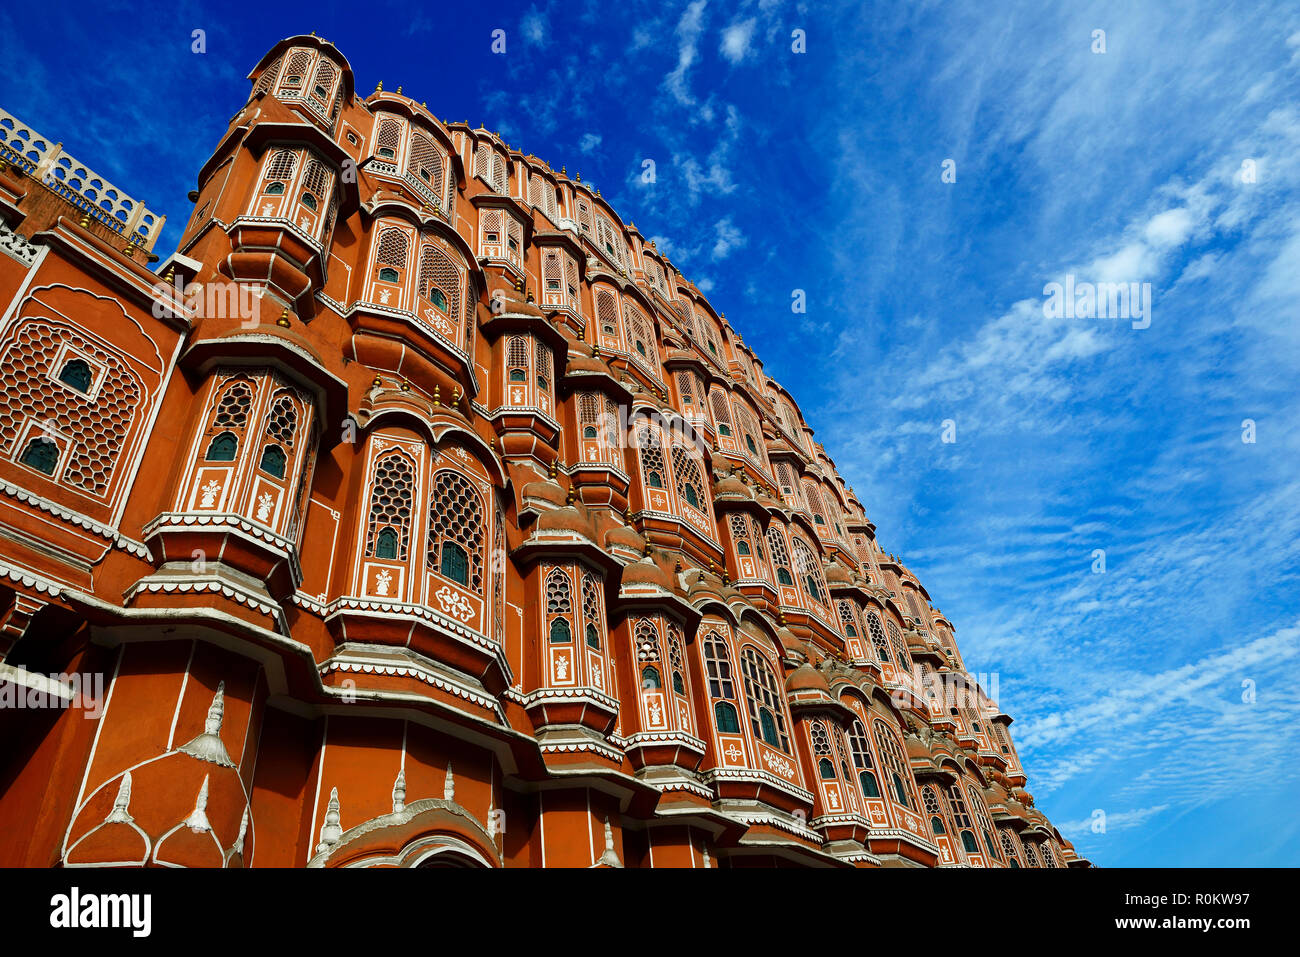 Facade, Hawa Mahal, Palace of the Winds, Jaipur, Rajasthan, India Stock Photo